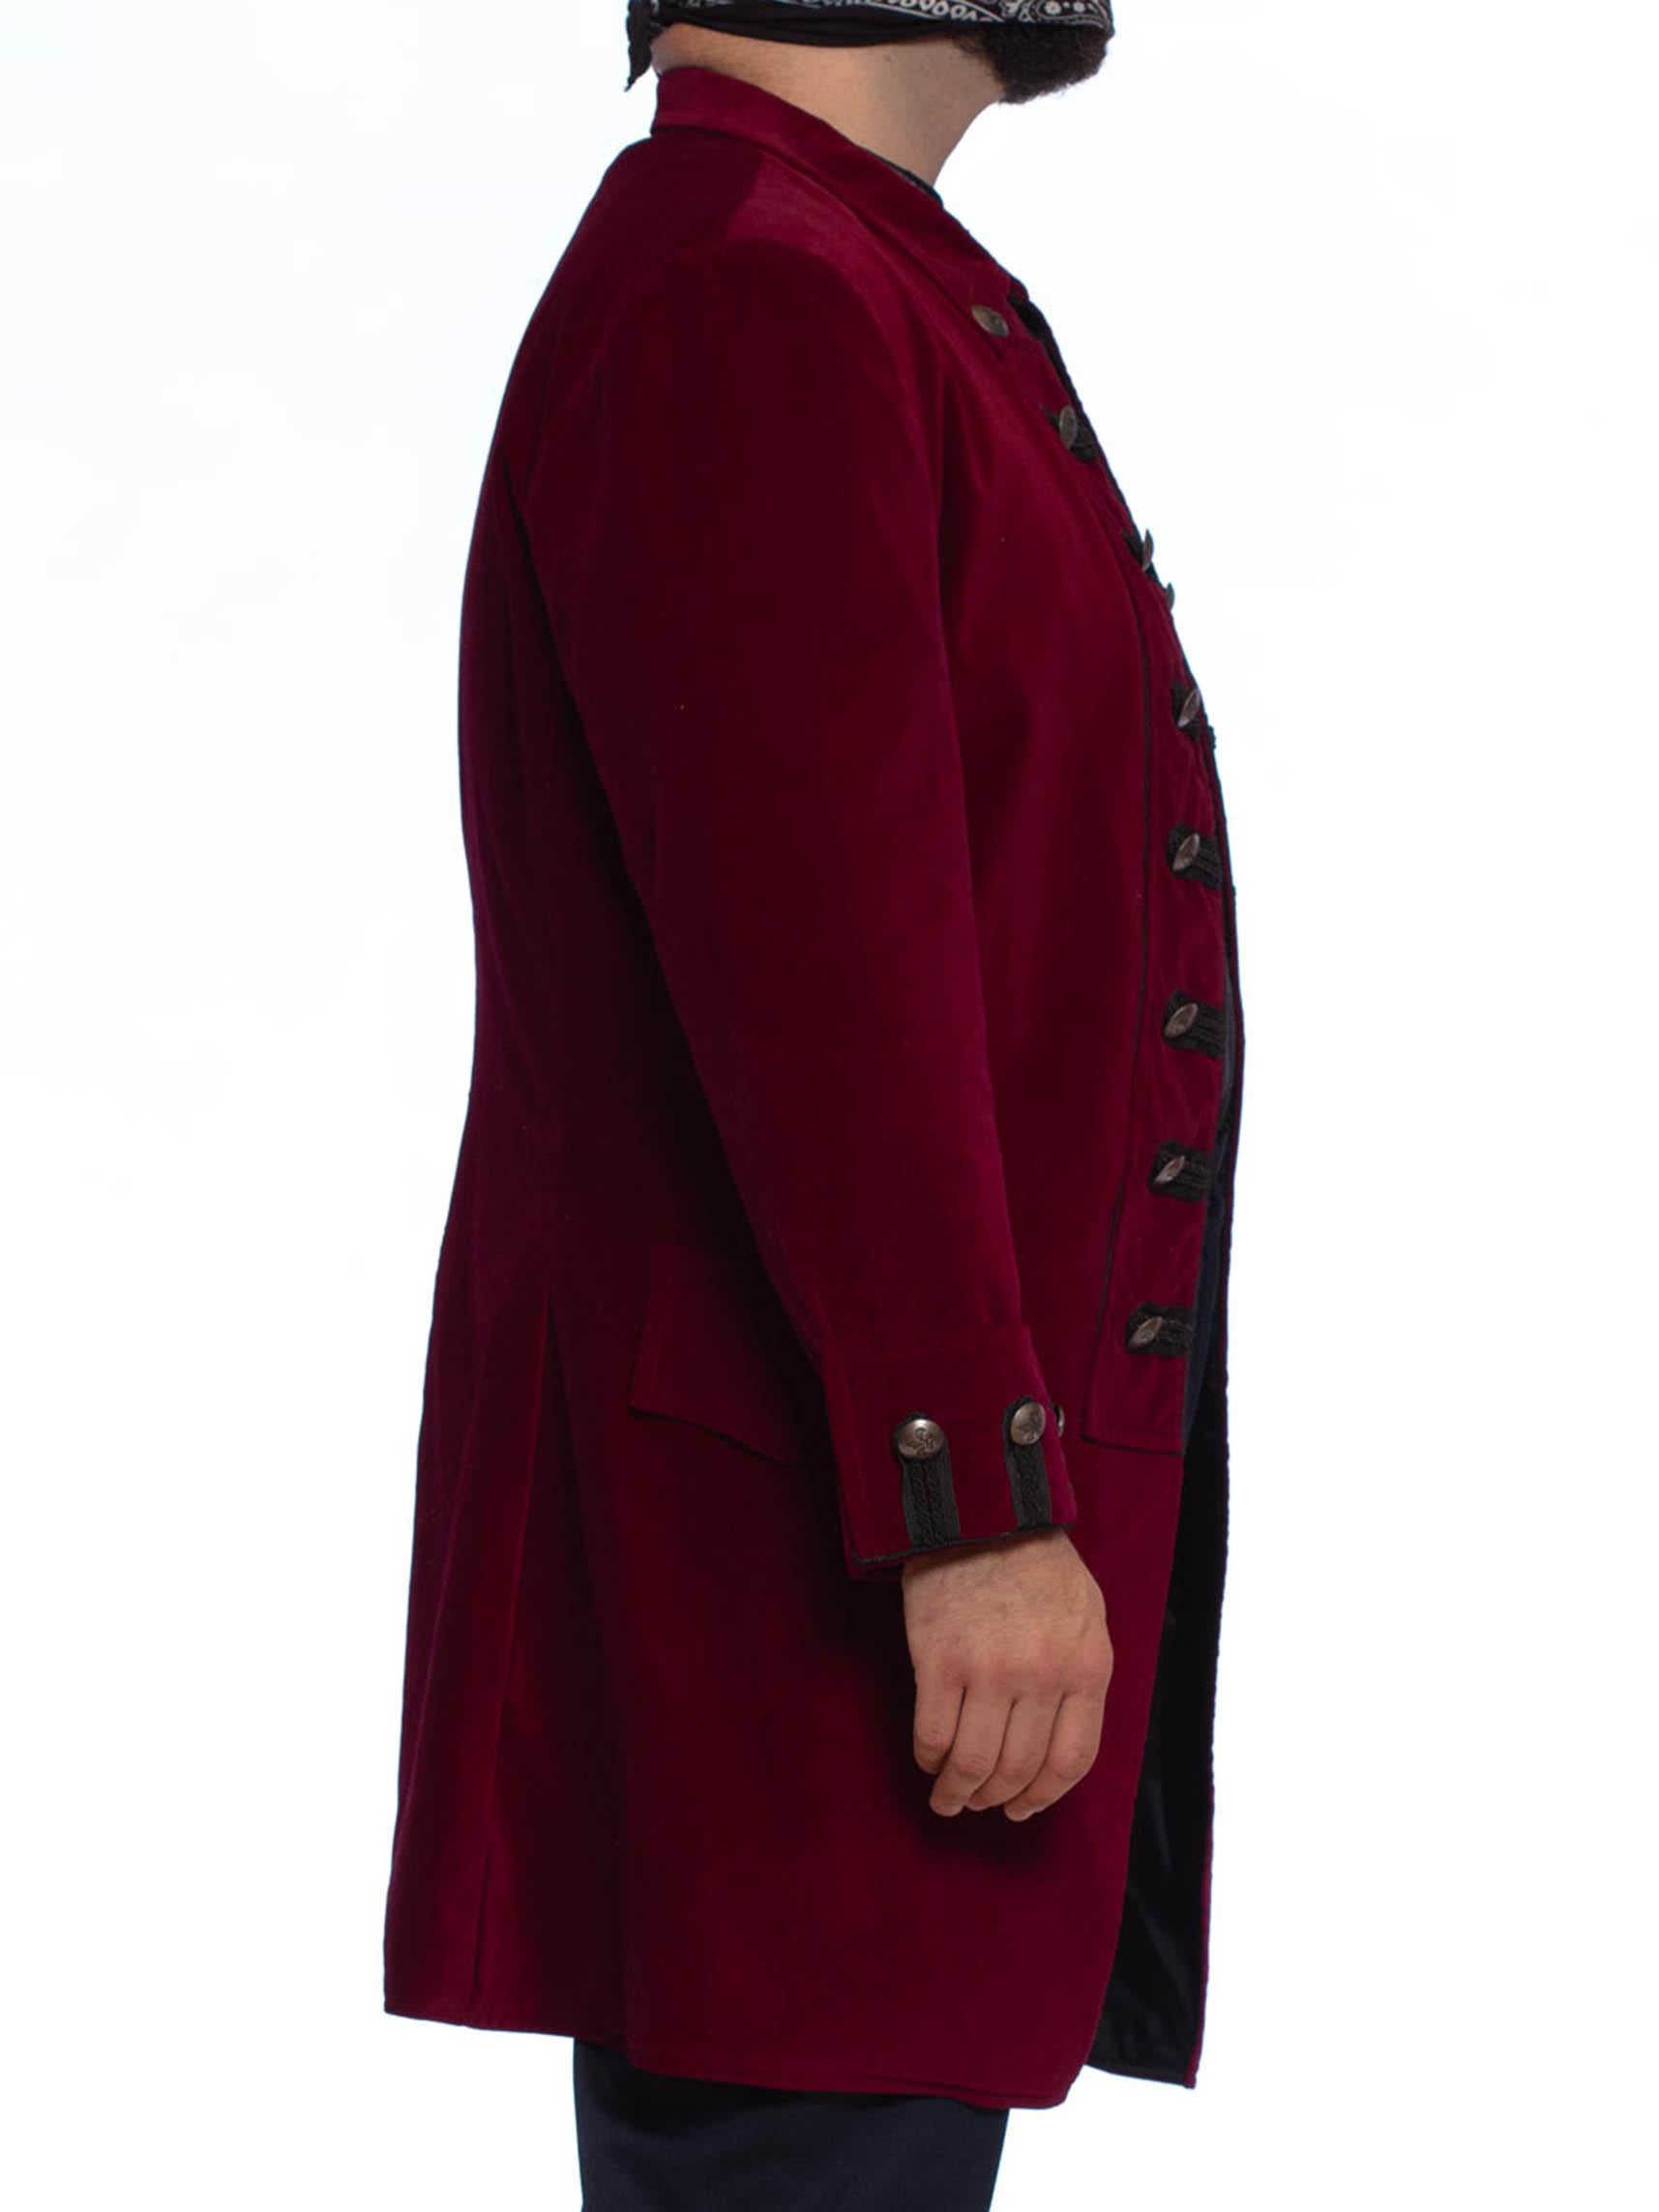 burgundy frock coat